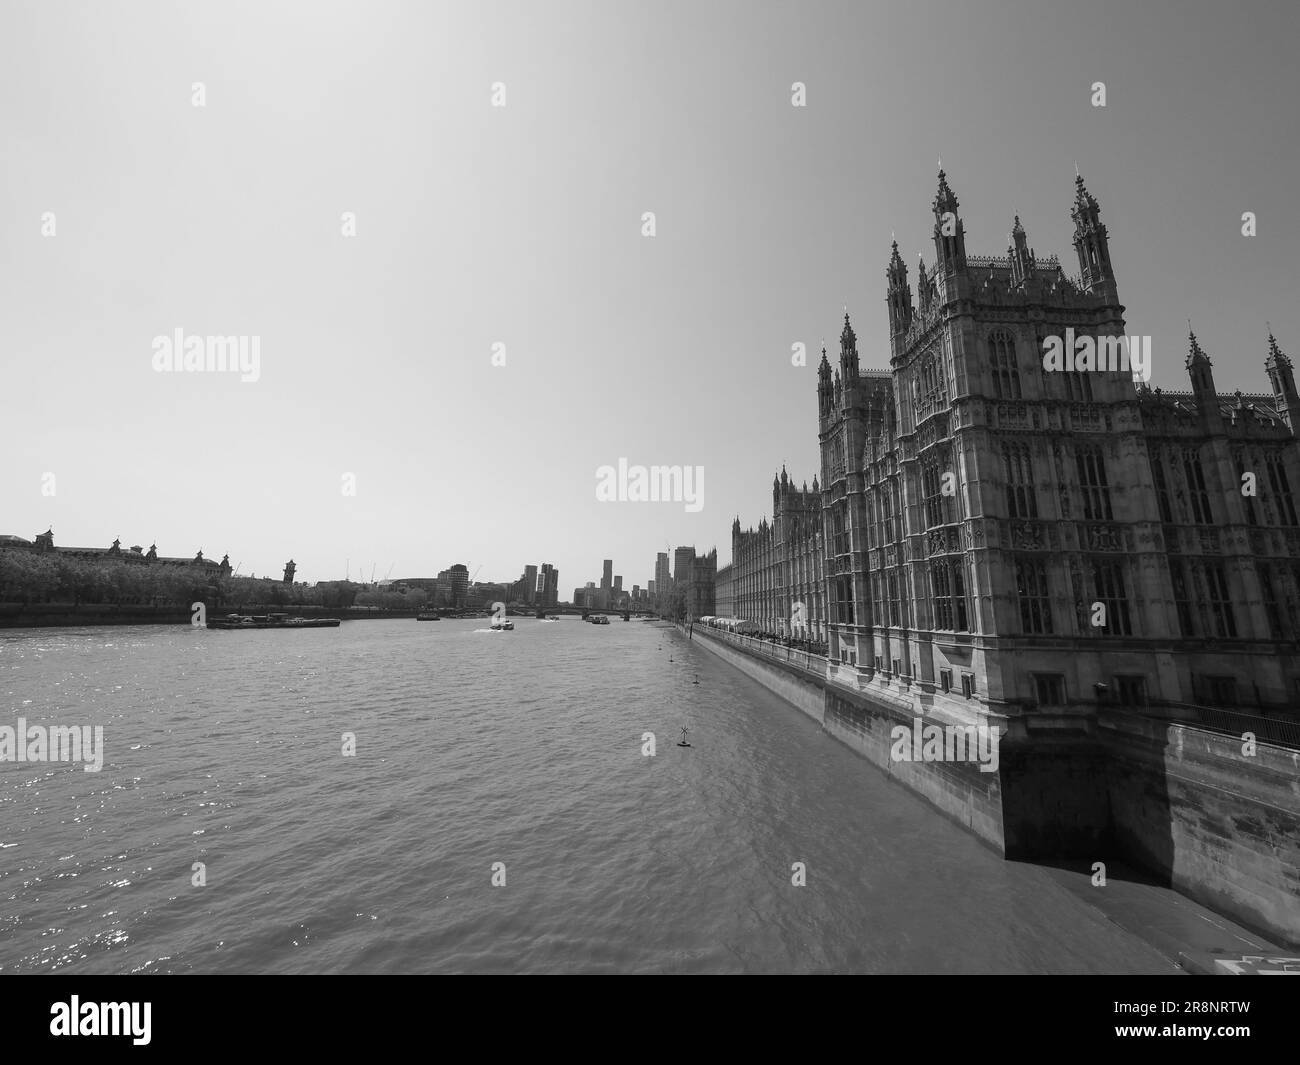 Häuser des Parlaments aka Westminster Palace in London, GB in Schwarz und Weiß Stockfoto